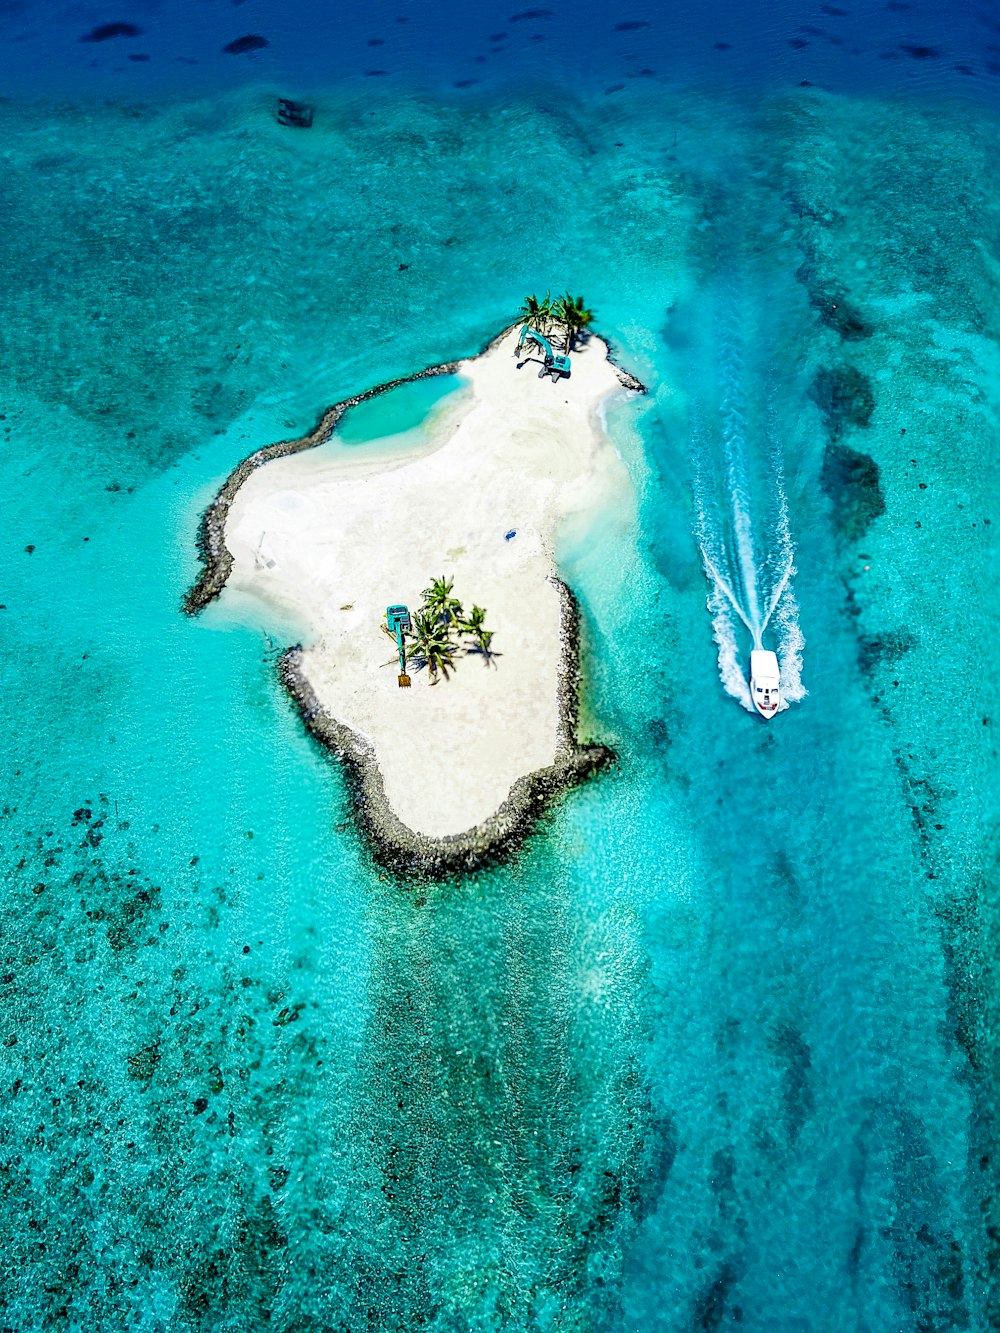 fotografia aérea da ilha